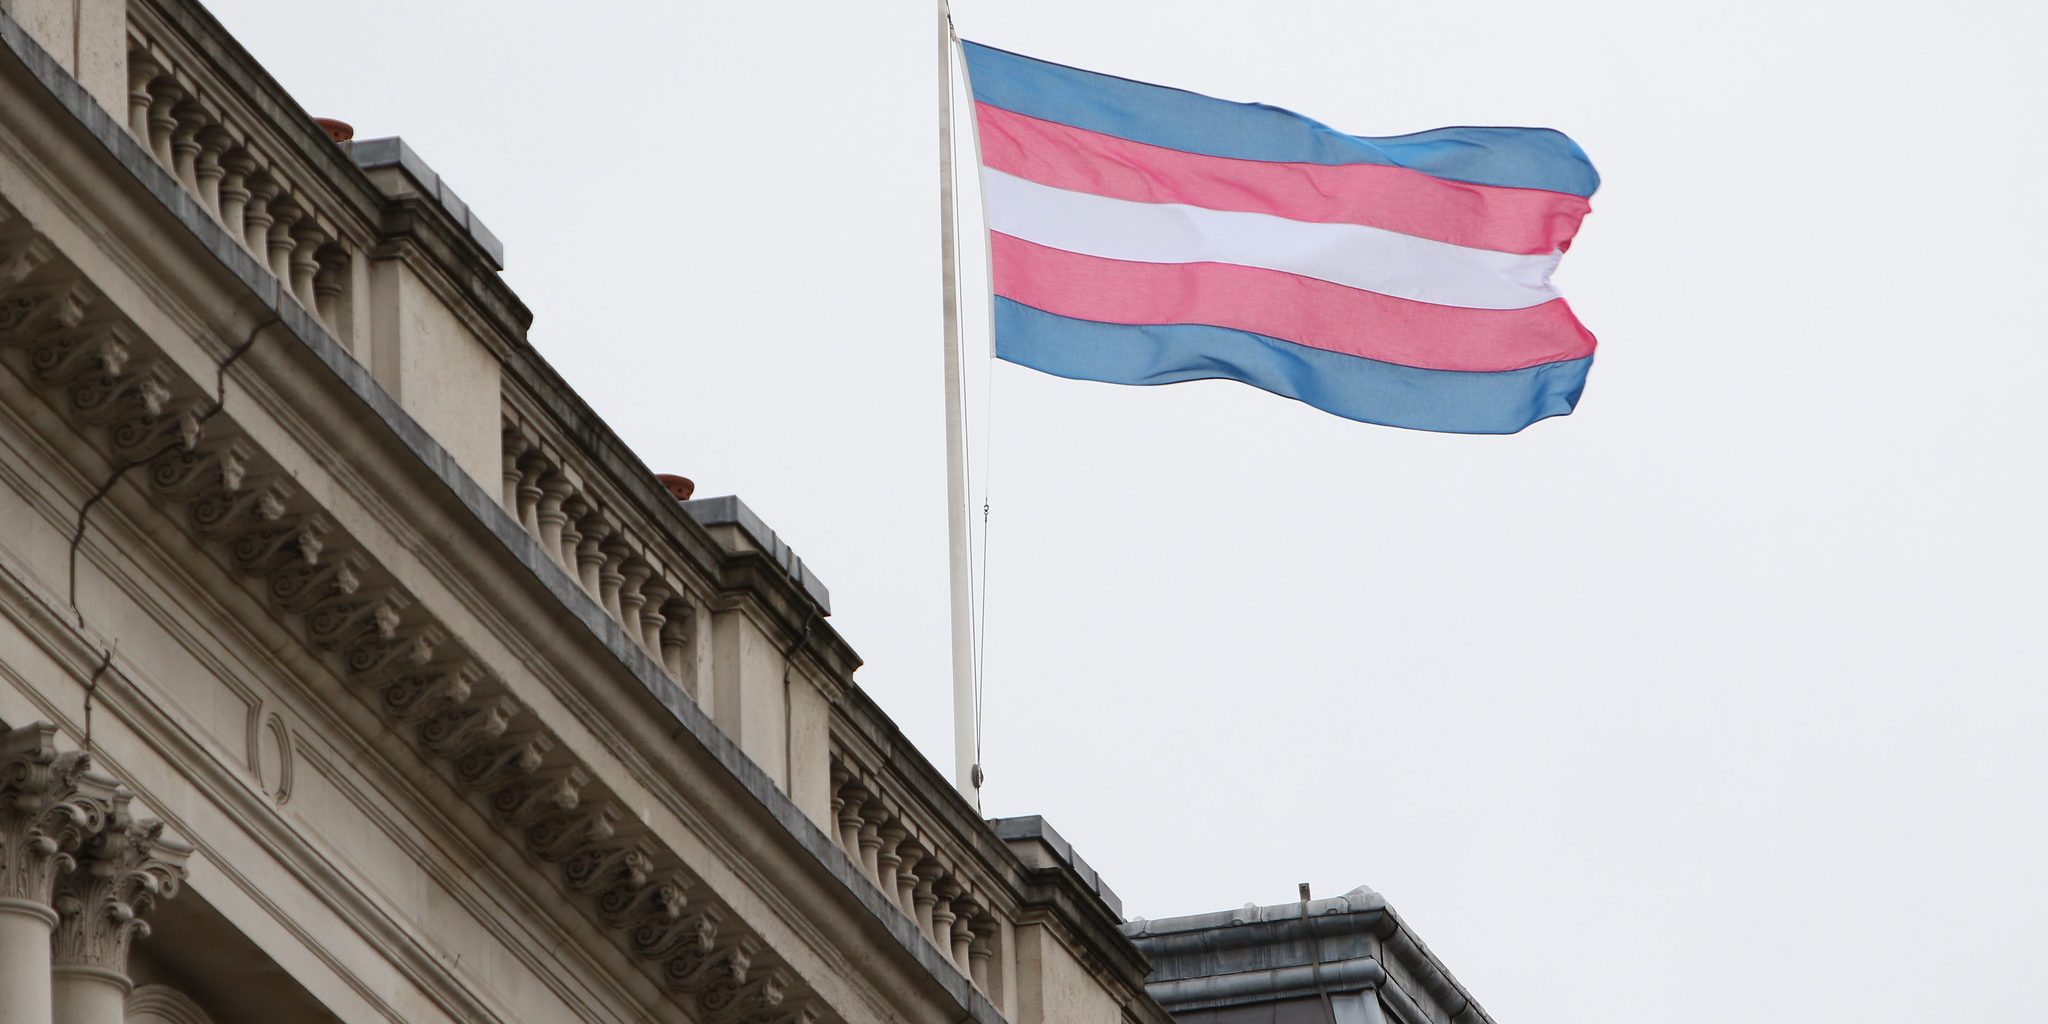 Salkoon nostettu transsukupuolisten lippu. Lipussa on viisi raitaa, joista kaksi reunimmaista vaaleansinisiä, seuraavat kaksi sisempänä olevaa vaaleanpunaisia, ja viimeinen keskellä oleva raita on valkoinen.